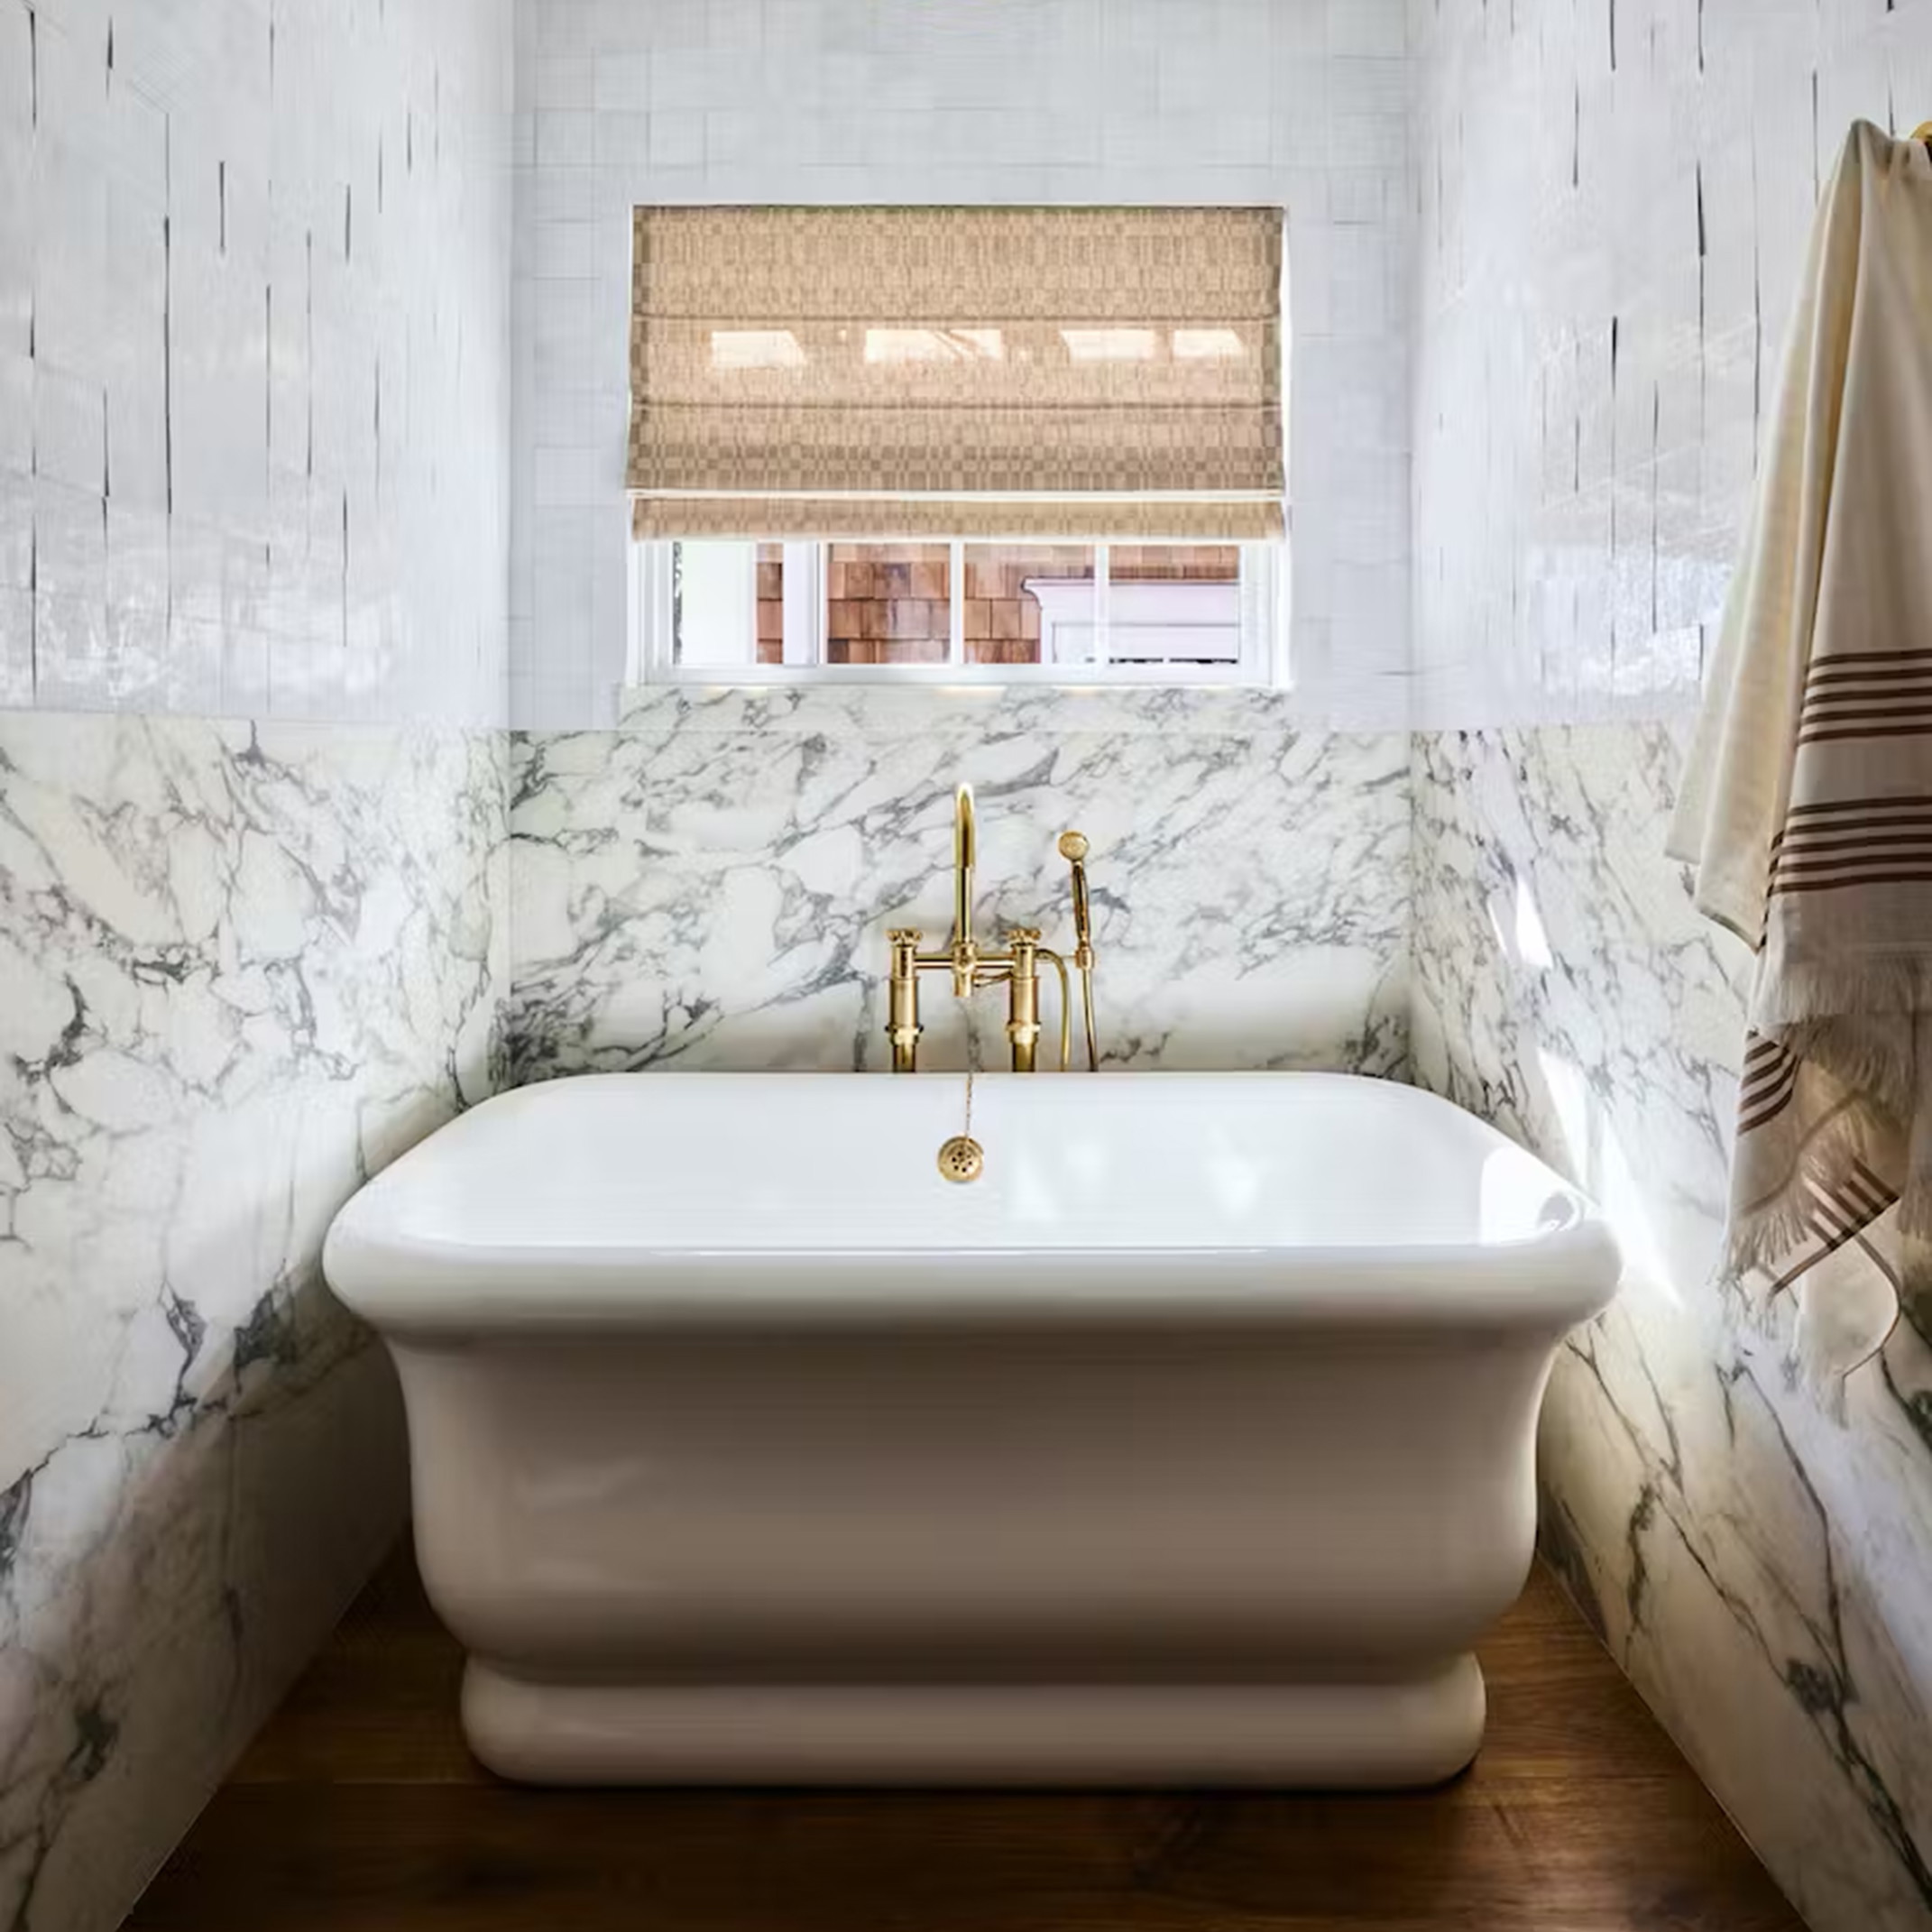 a white bath tub sitting under a window in a bathroom